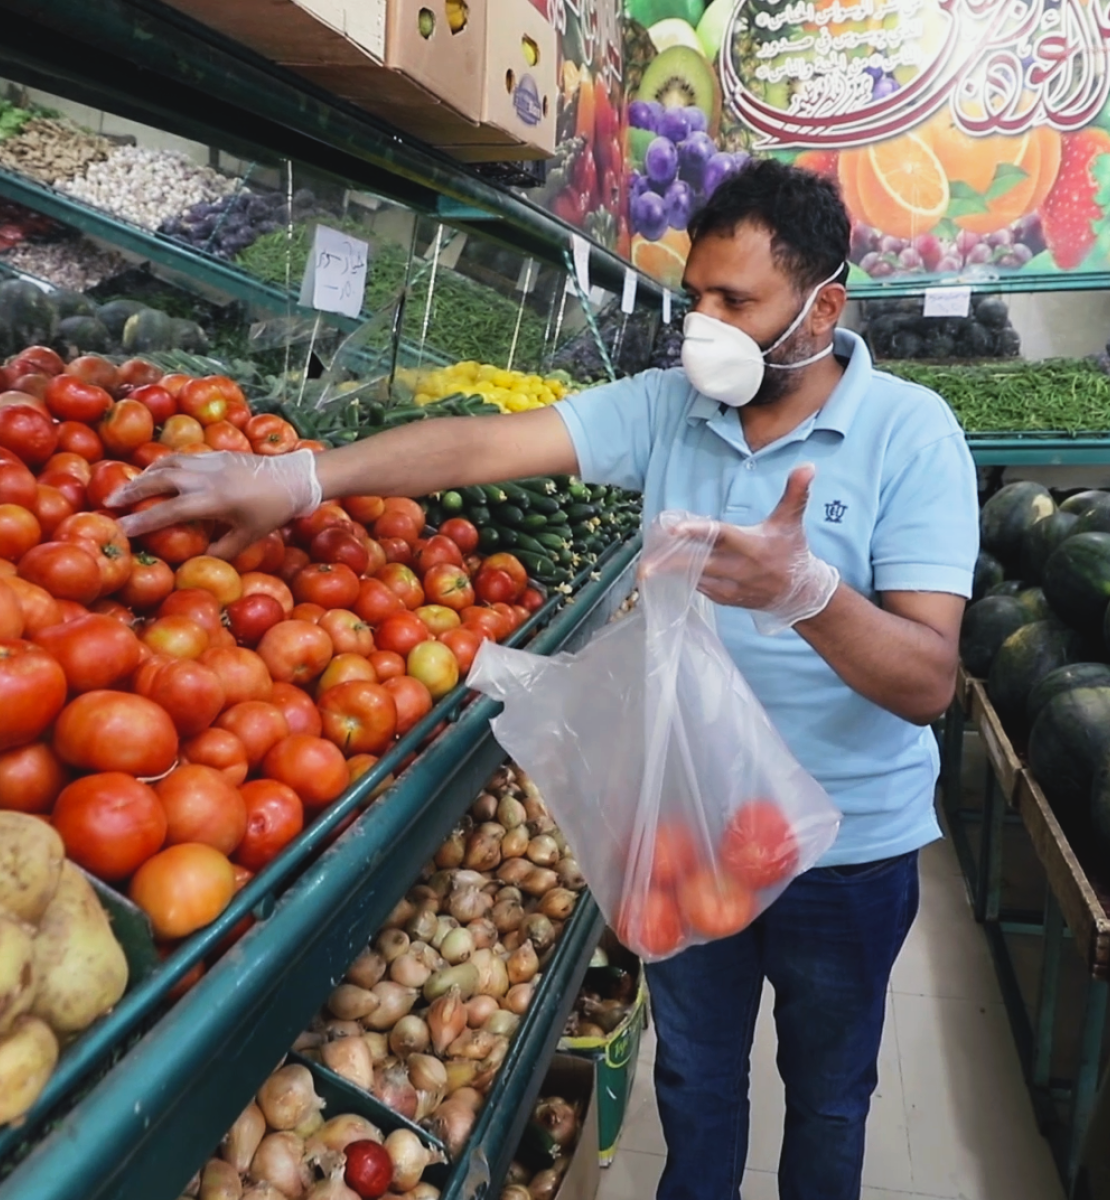 Abdou, un réfugié yéménite à Amman, fait ses courses chez un marchand de légumes après la réouverture des petits commerces. Il porte un masque de protection et des gants. Au premier plan de l’image, un enfant, lui aussi portant un masque, le regarde mettre des tomates un sac en plastique.